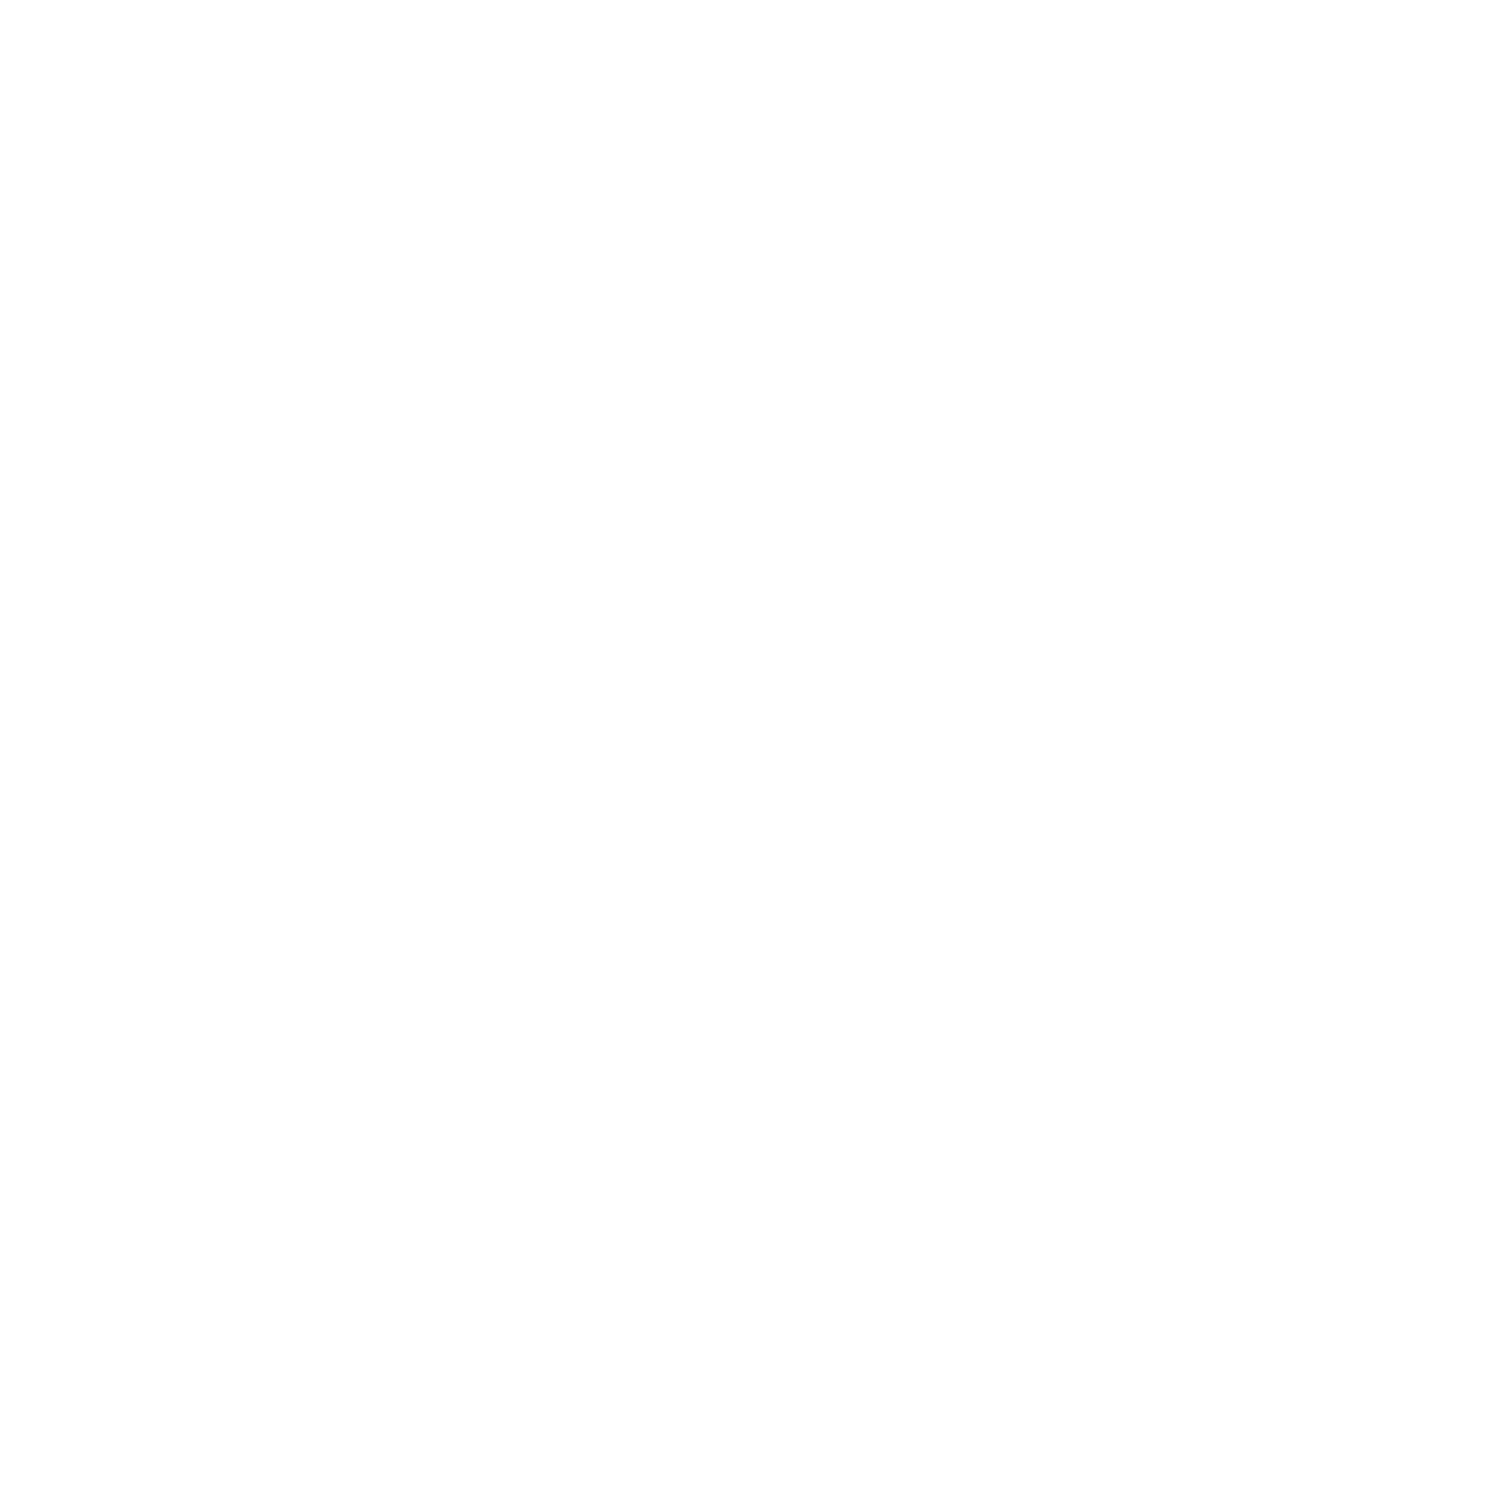 Bank of Innovation logo for dark backgrounds (transparent PNG)